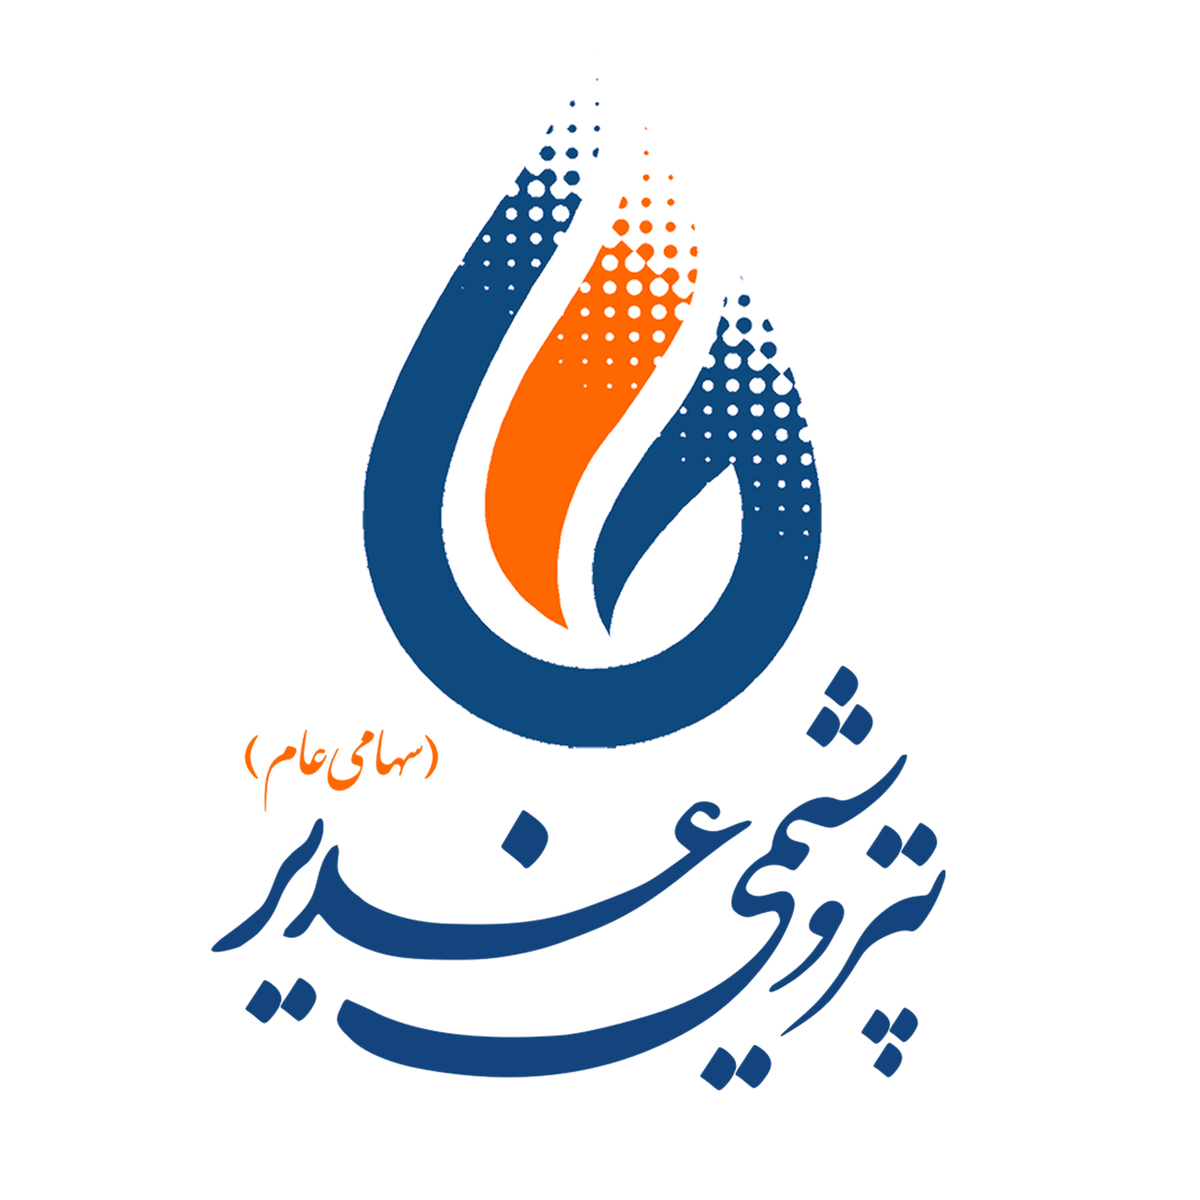 پتروشيمی غدیر پیشتاز شفافیت در صنعت پتروشیمی / سامانه ستاد ایران میزبان معاملات پتروشیمی غدیر